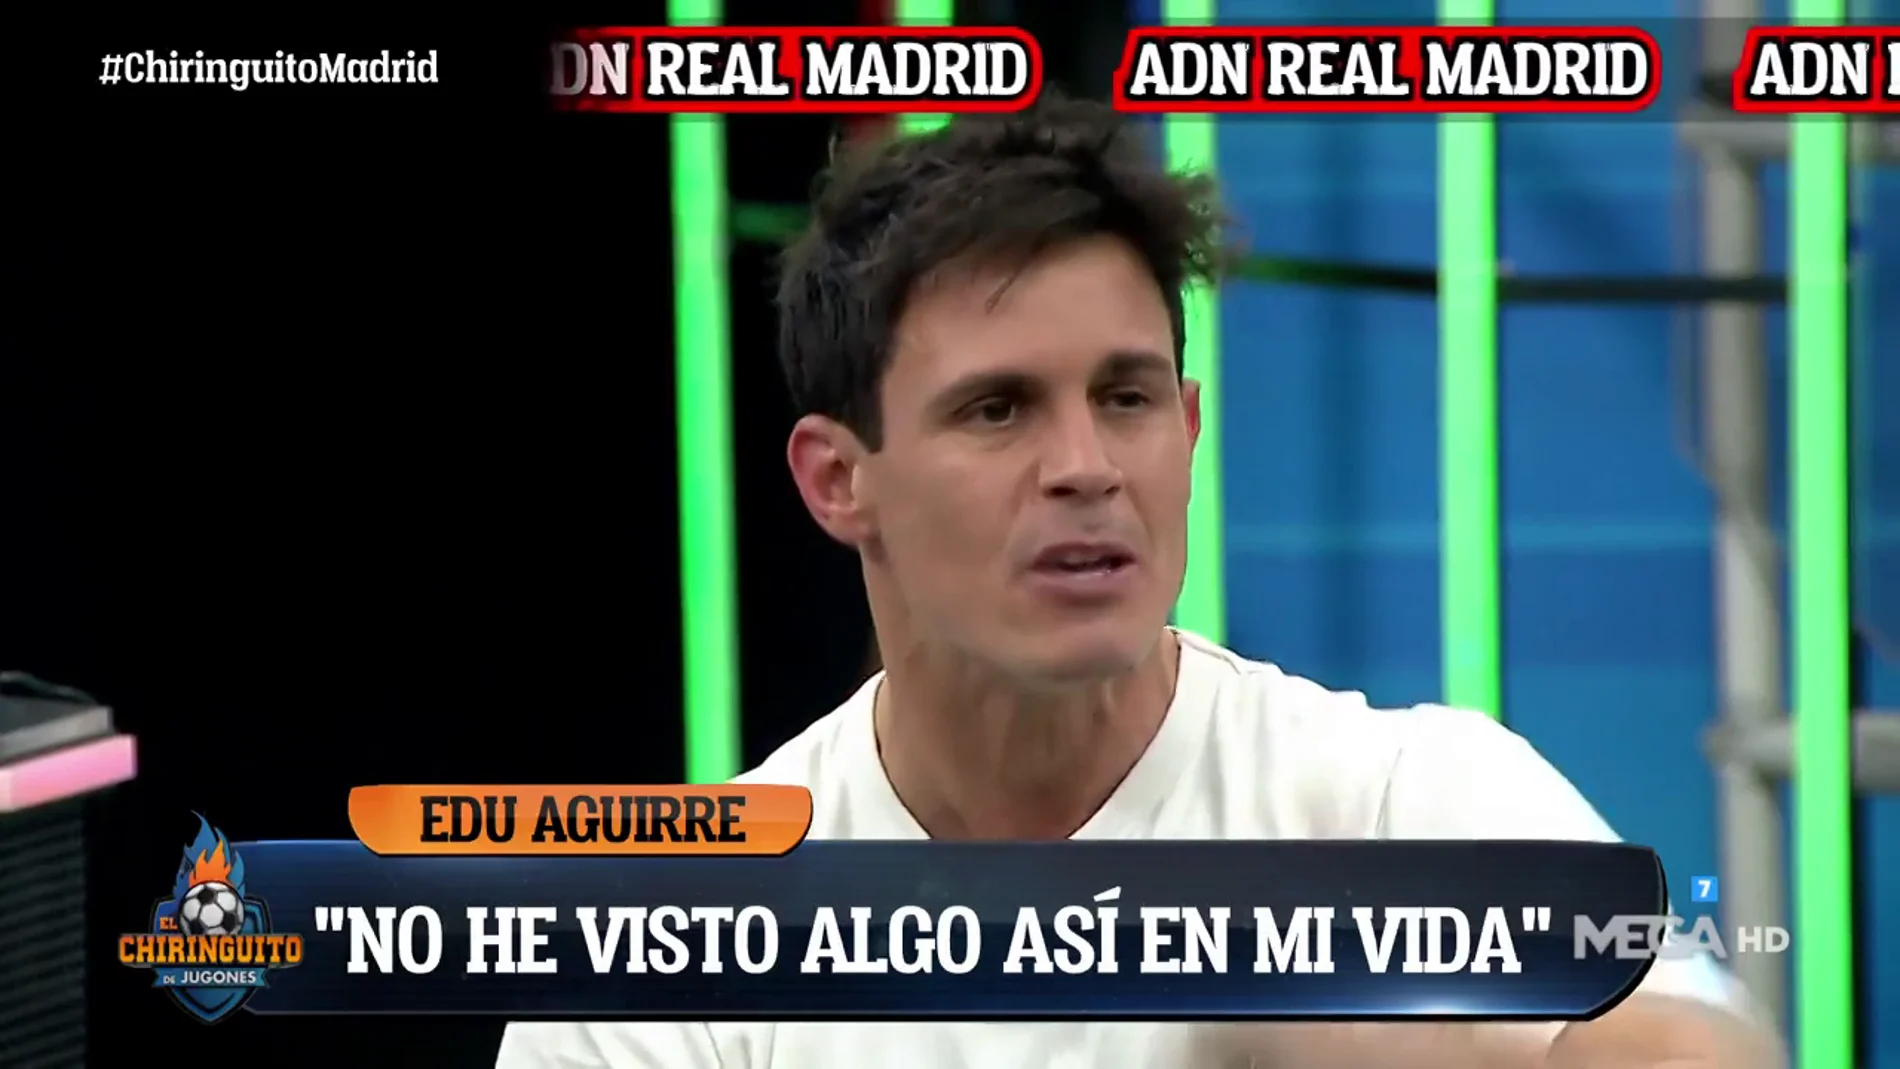 Edu Aguirre: "El fútbol y el Real Madrid son lo mejor que hay"